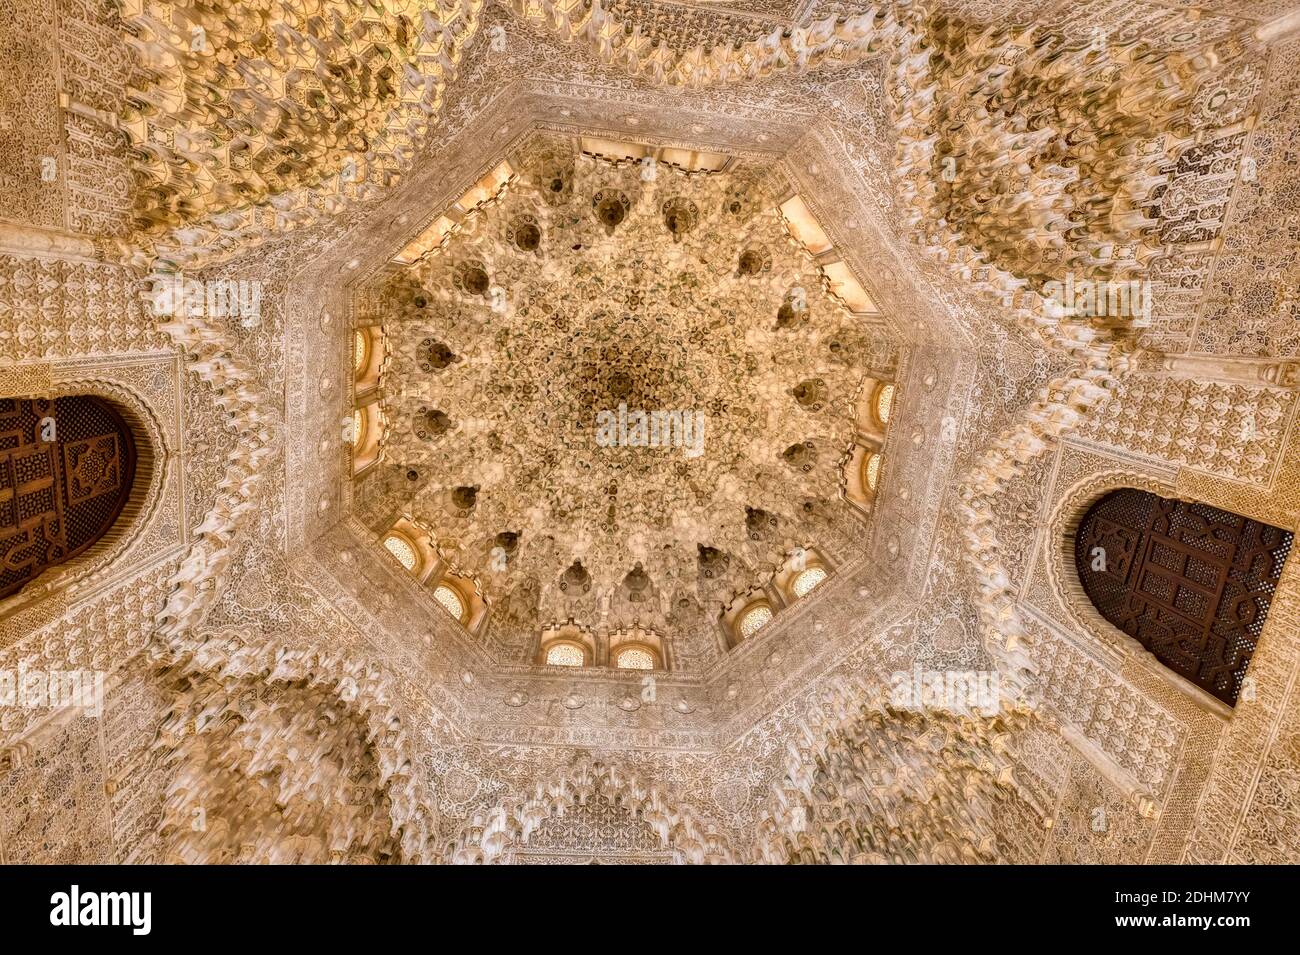 GRENADE, ESPAGNE - MARS 20,2019: Vue grand angle du plafond dans le palais Nasrid à Alhambra, Grenade, Espagne Banque D'Images